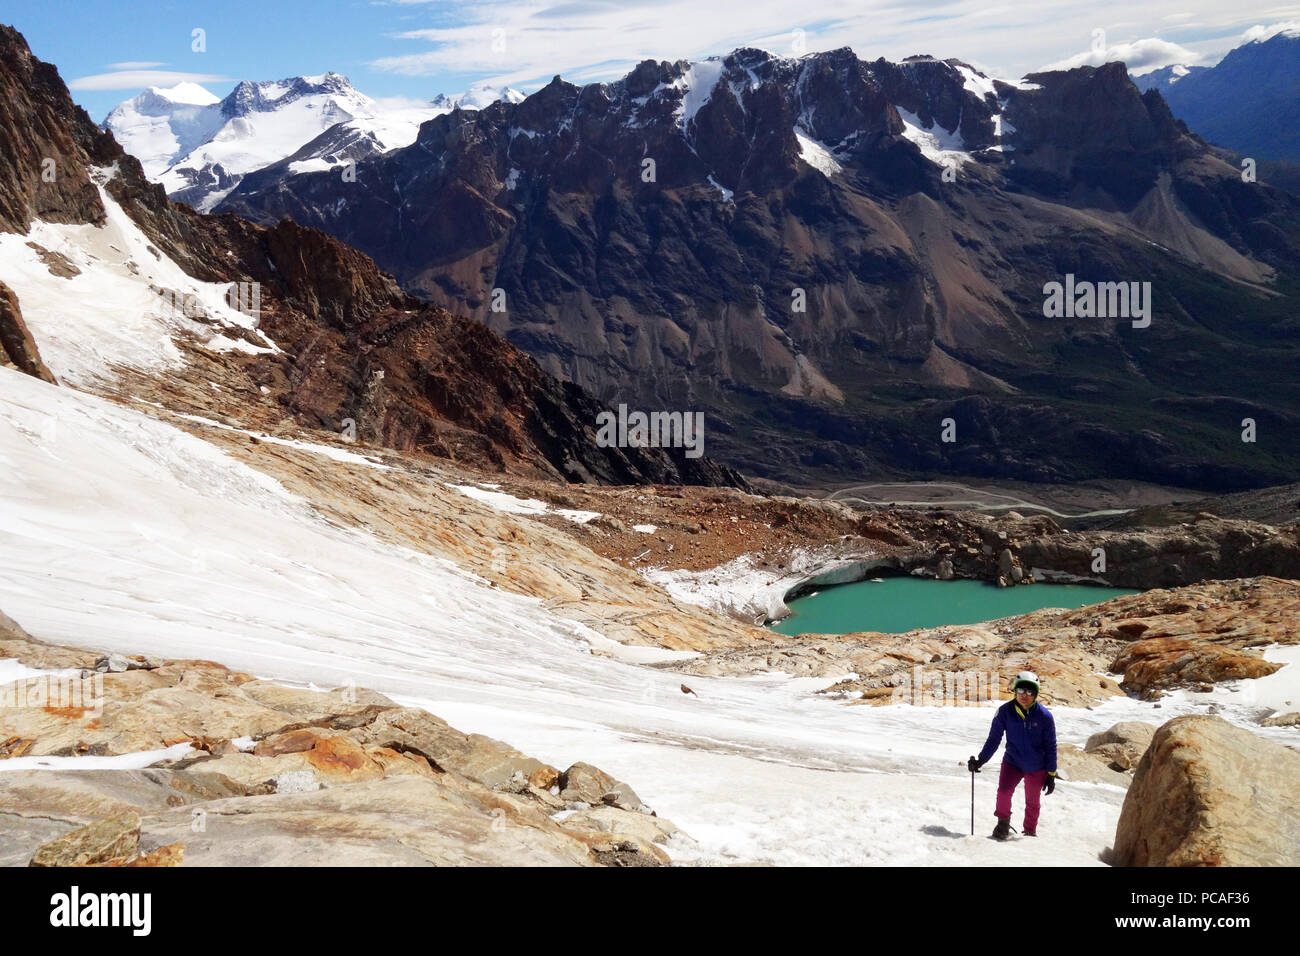 Un escalador en la montaña a continuación Monte Fitz Roy, El Chaltén, Patagonia, Argentina, Sudamérica Foto de stock